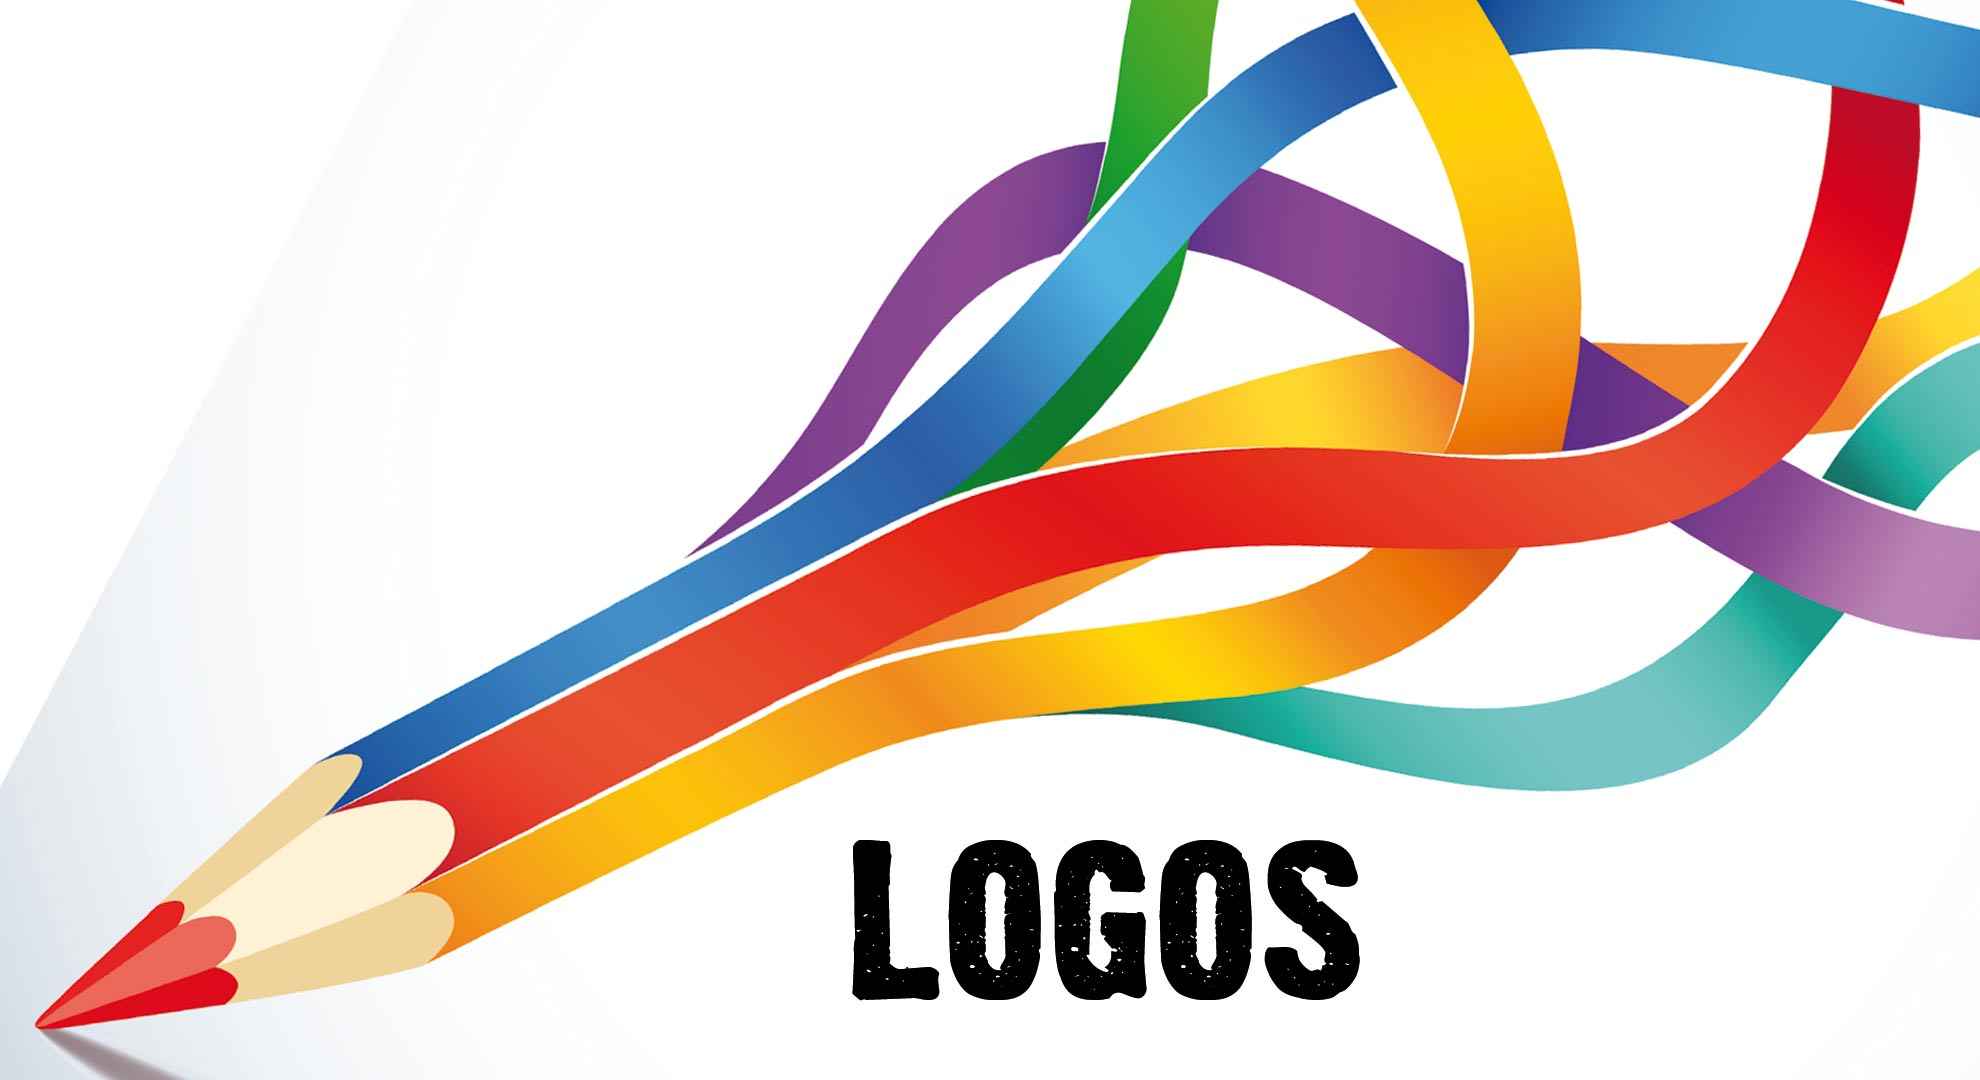 Unique & Elegant Logo Designing by 4Horsemen SEO India